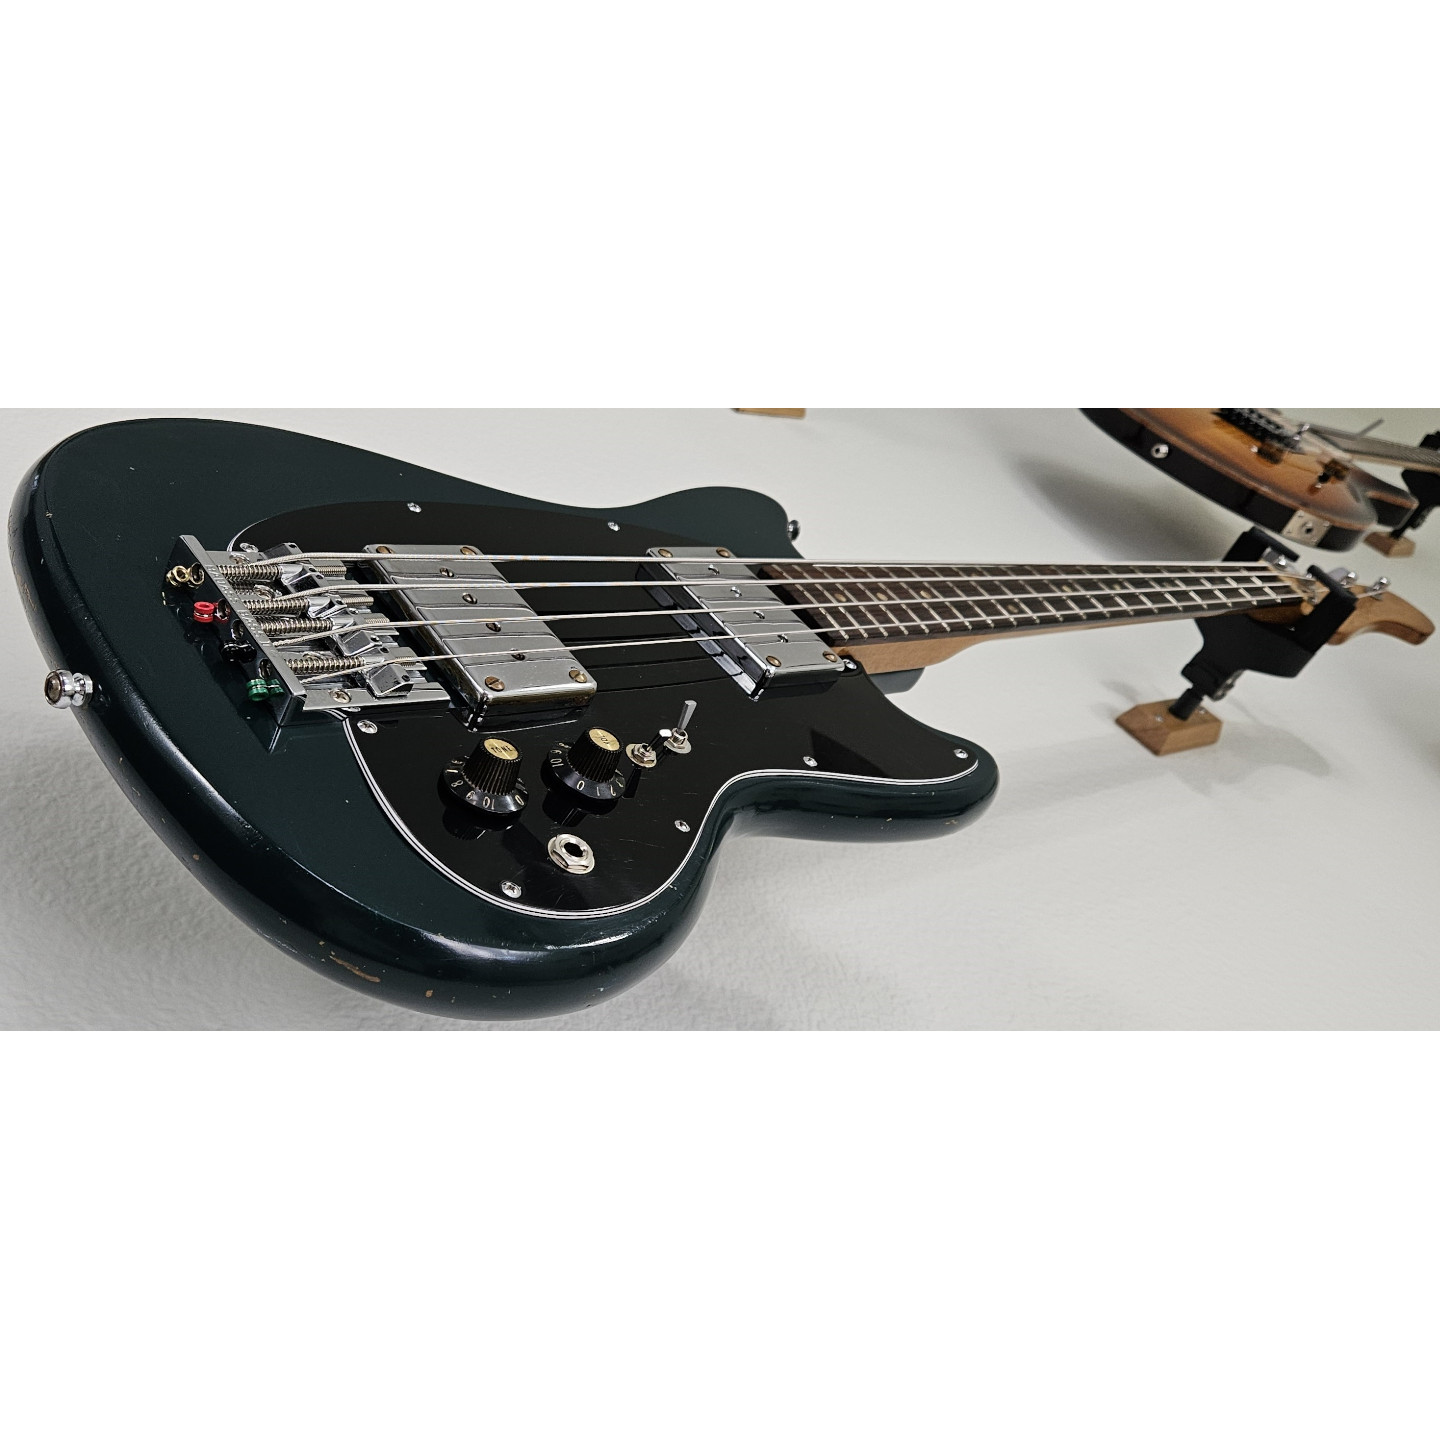 1966 Kalamazoo KB-1 Vintage Gibson USA American Bass Guitar